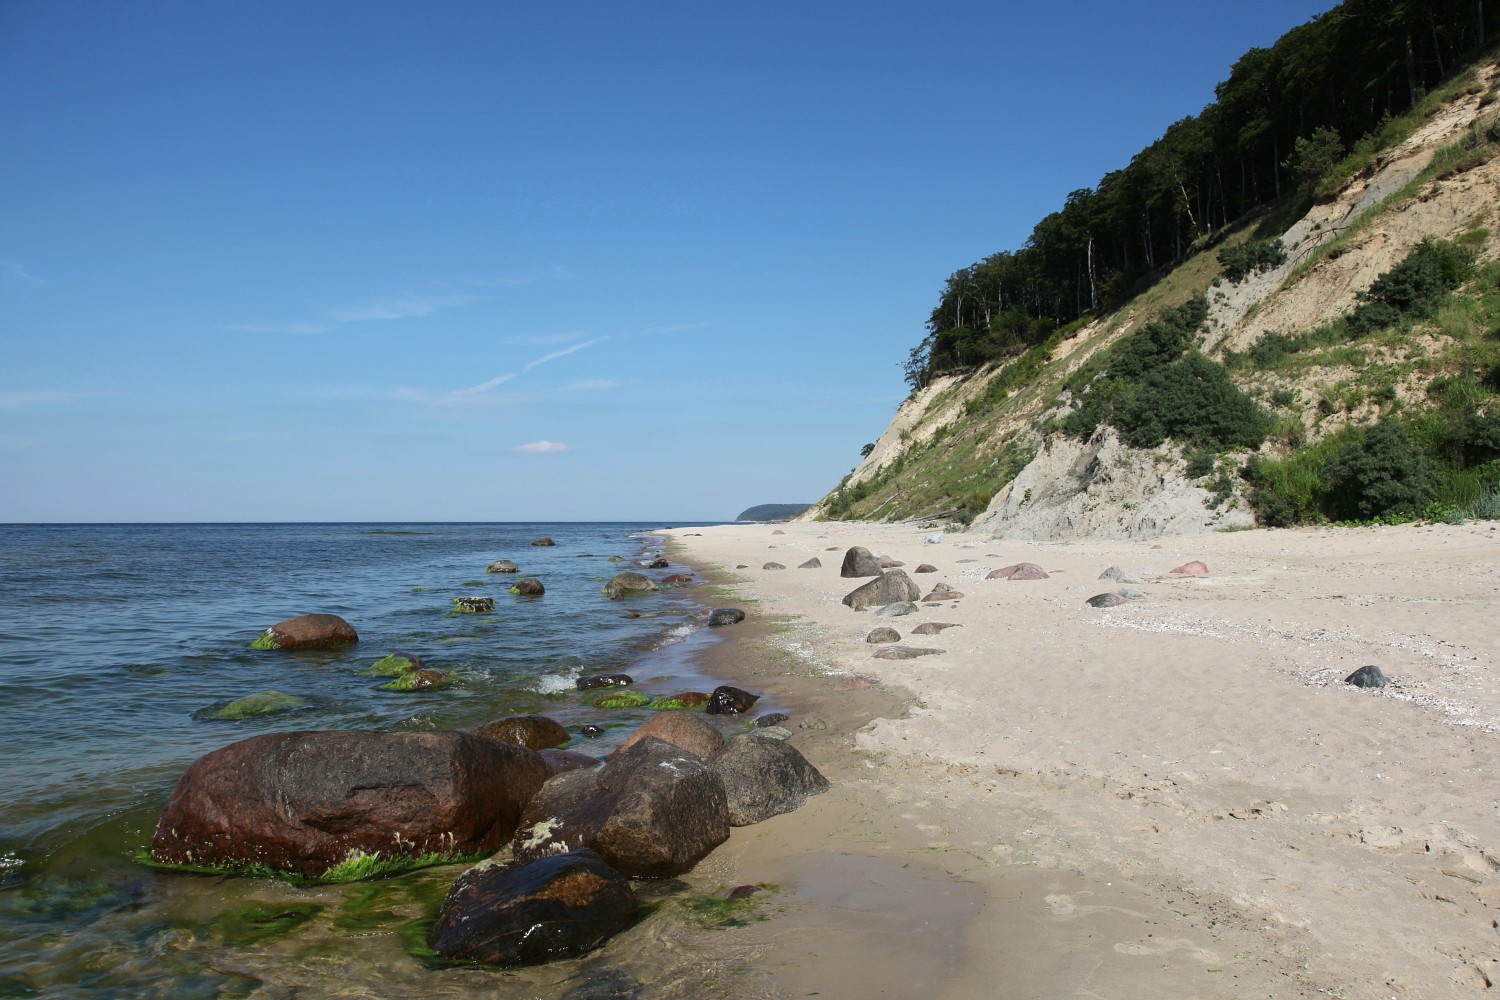 Wolińskie klify tworzą chyba jeden z najpiękniejszych fragmentów polskiego wybrzeża Bałtyku (fot. Sebastian R. Bielak).